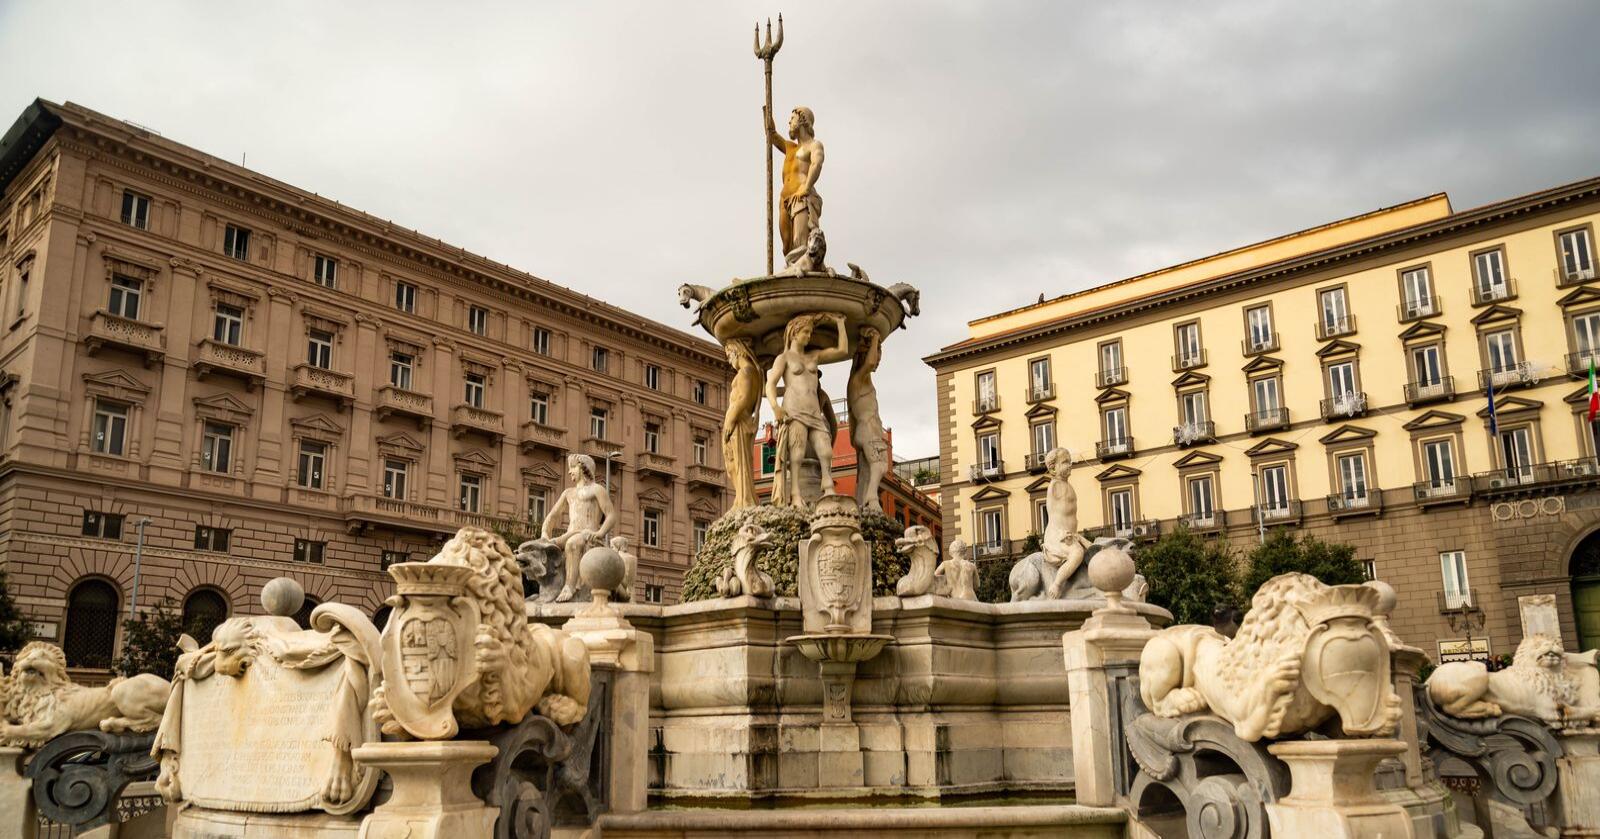 Opptil én million mennesker tilknyttet svart økonomi skal være rammet av pengemangel i Sør-Italia. Her illustrert med Neptune-fontenen i Napoli. Foto: Mostphotos